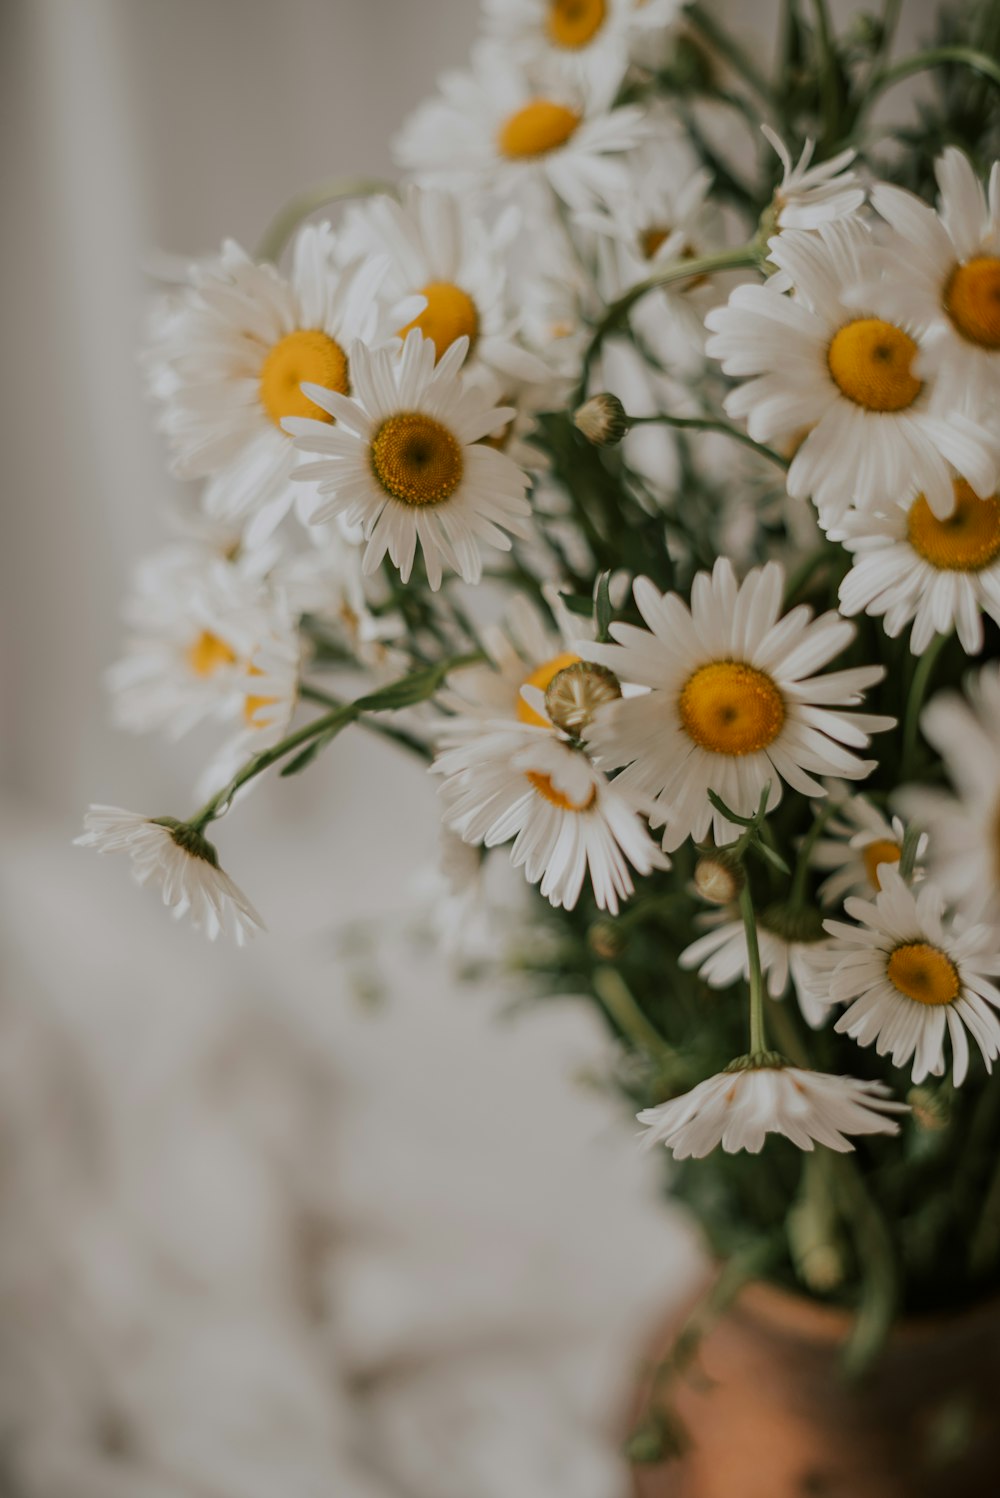 Un vase rempli de nombreuses fleurs blanches et jaunes